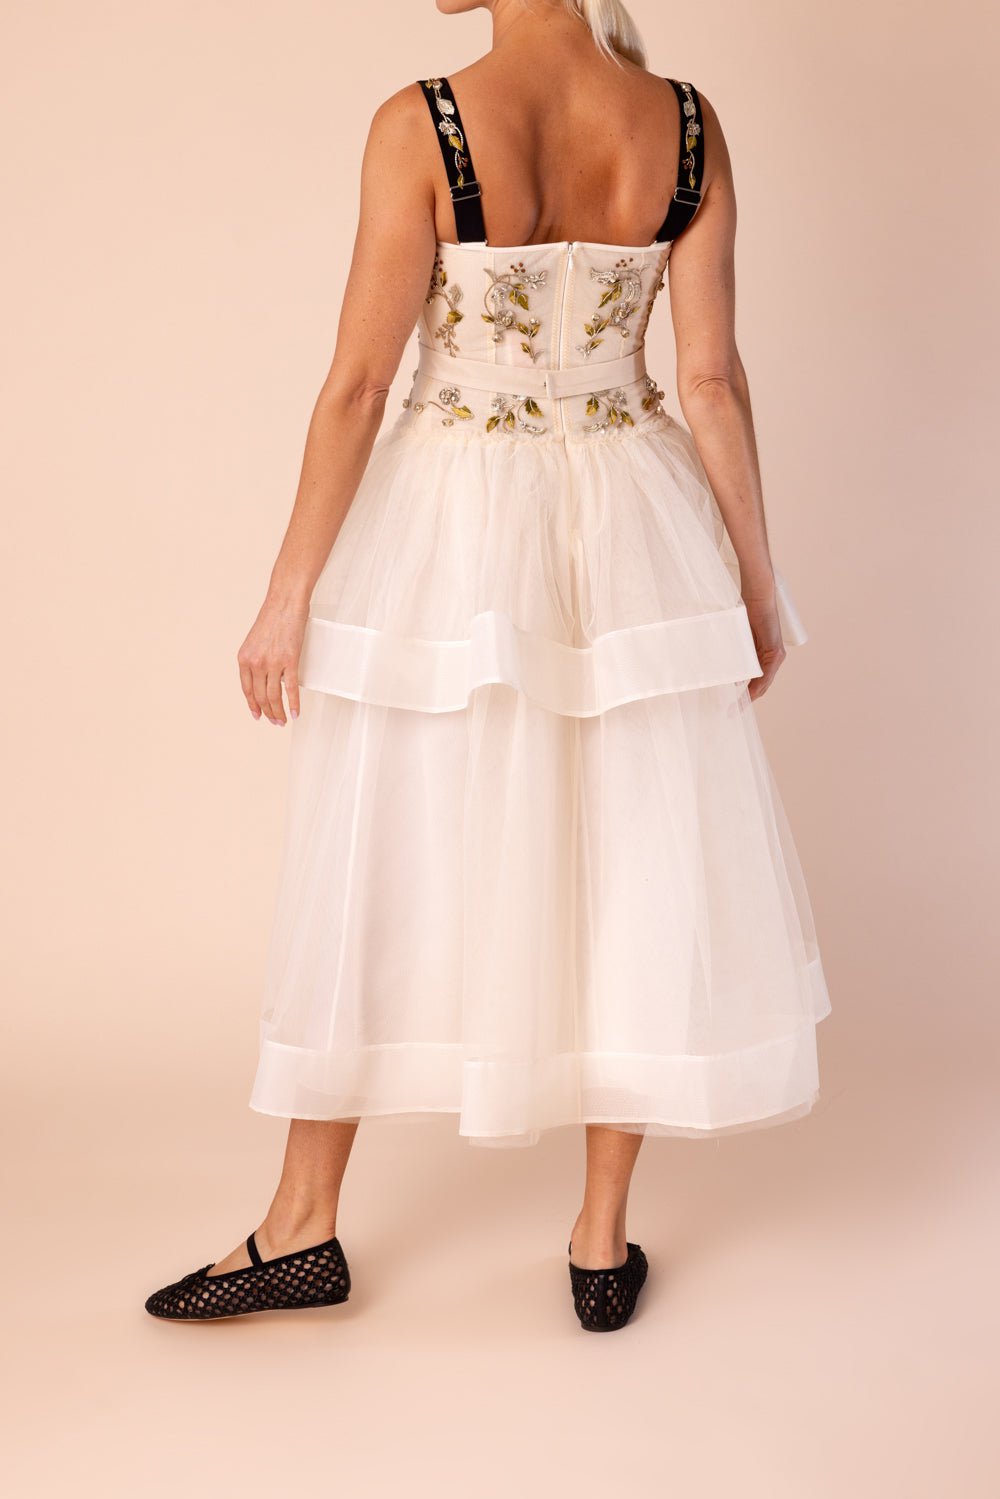 ERDEM-Embroidered Full Skirt Dress-IVORY